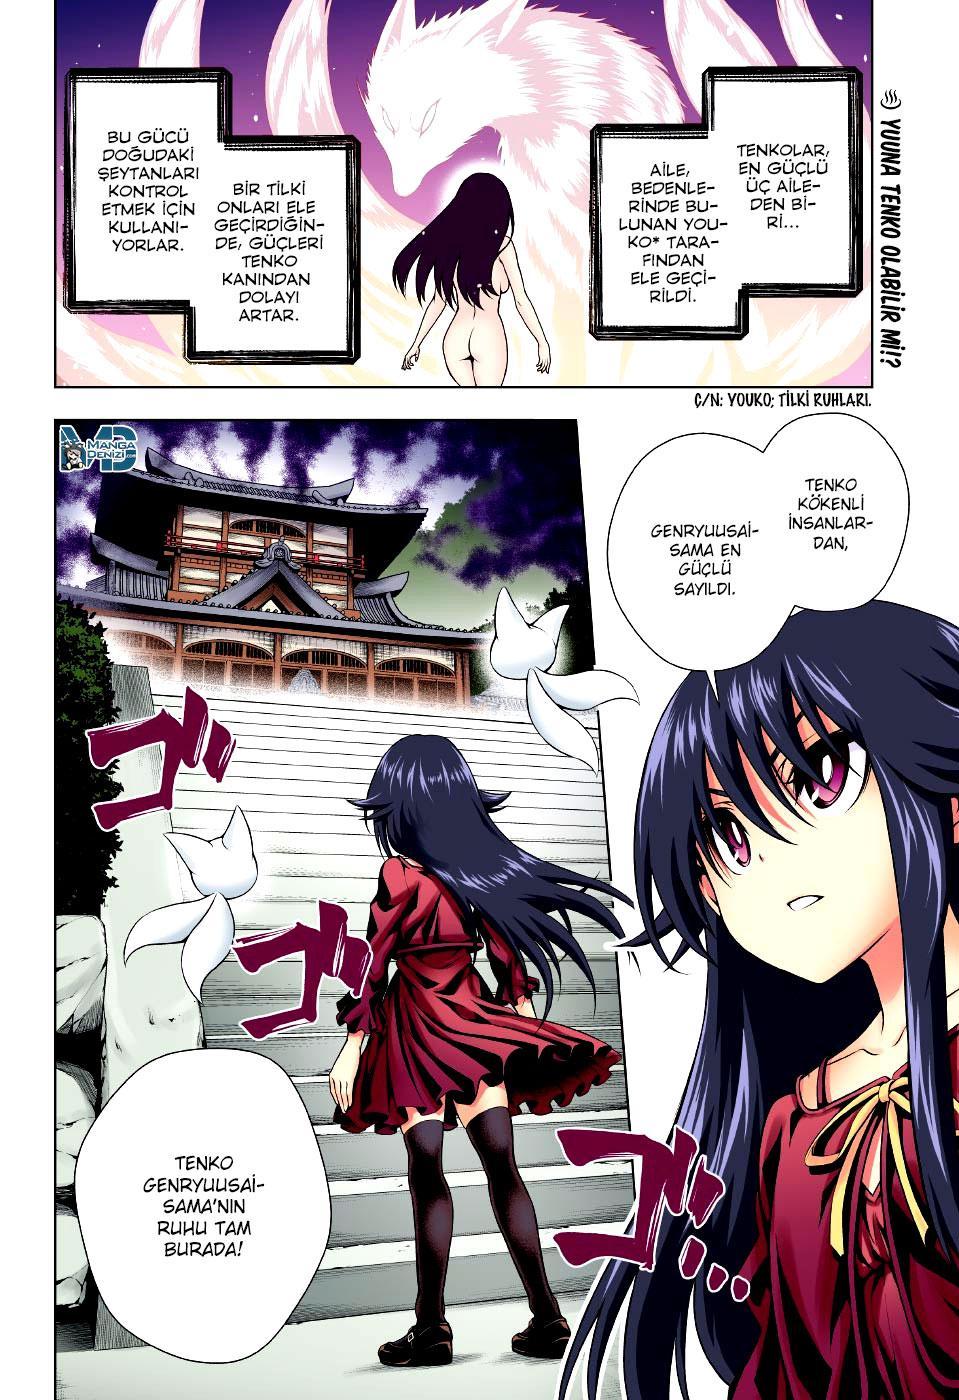 Yuragi-sou no Yuuna-san mangasının 093 bölümünün 3. sayfasını okuyorsunuz.